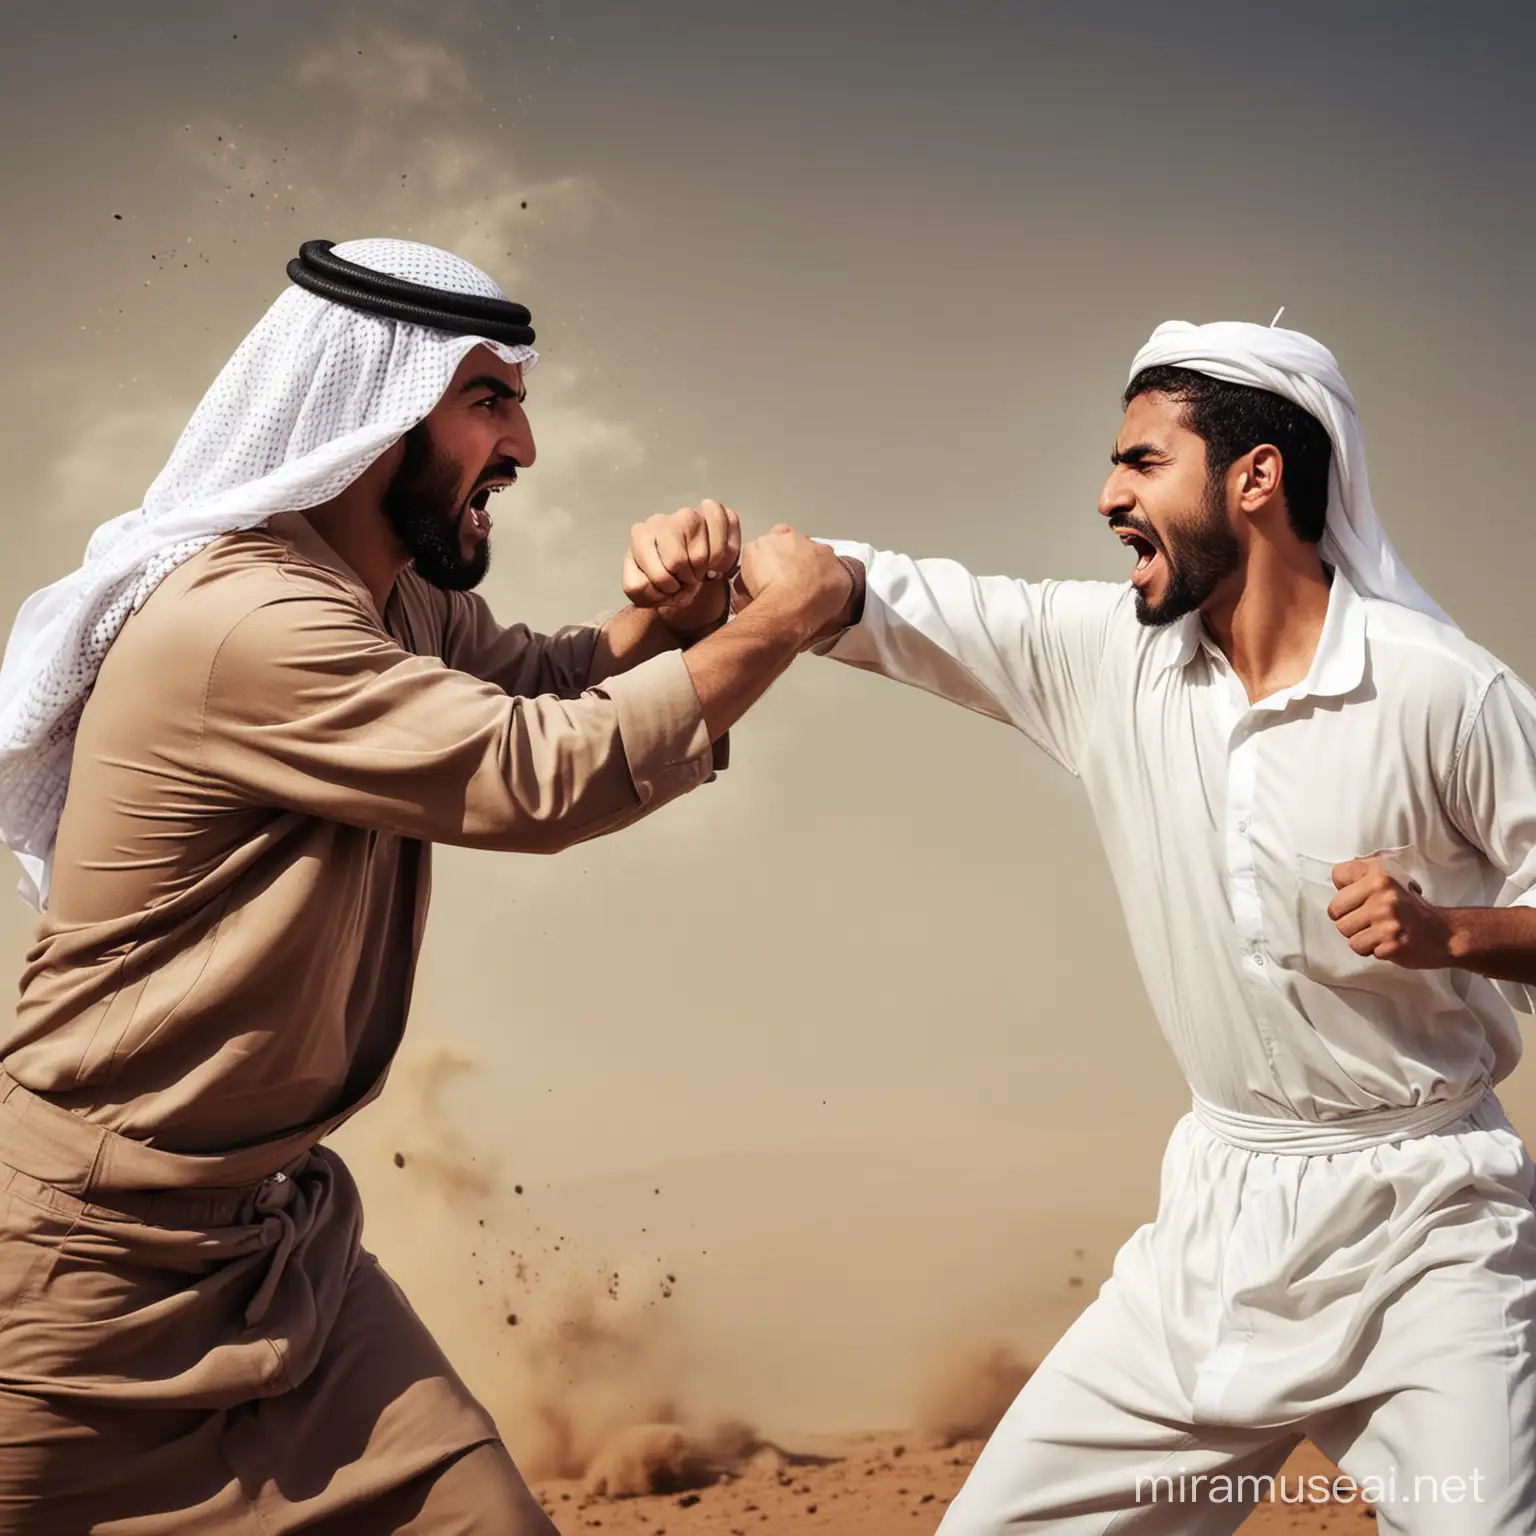  صورة لرجل عربي يضرب رجل اخر وهو غاضب